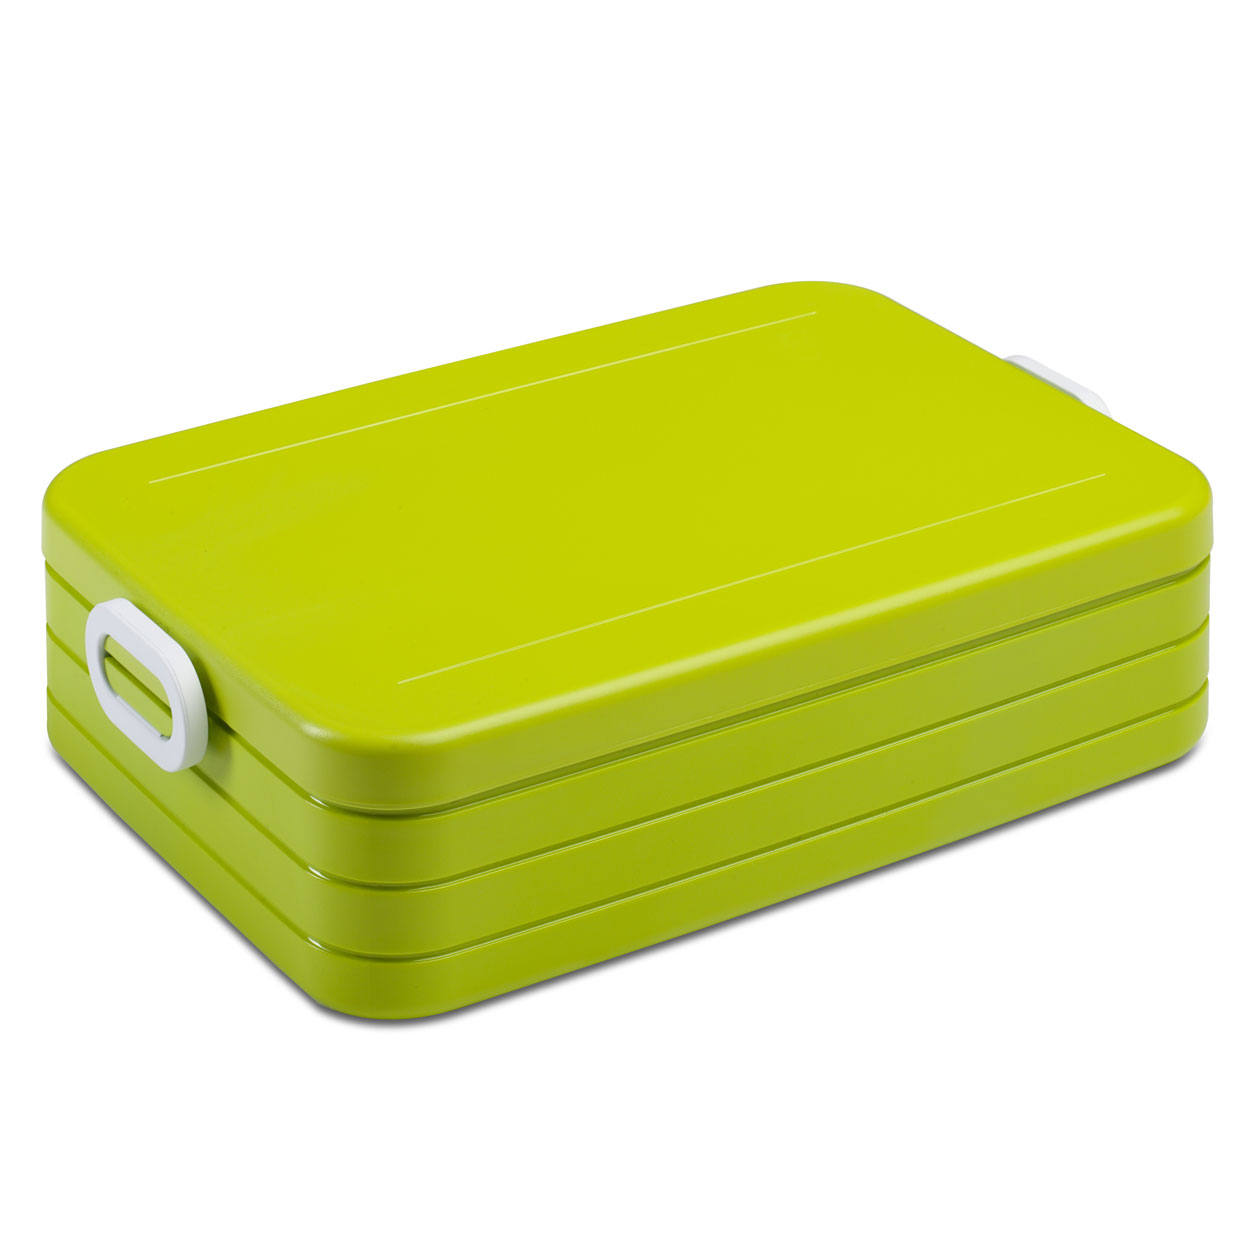 Mepal Lunchbox Take a Break Large - Lime